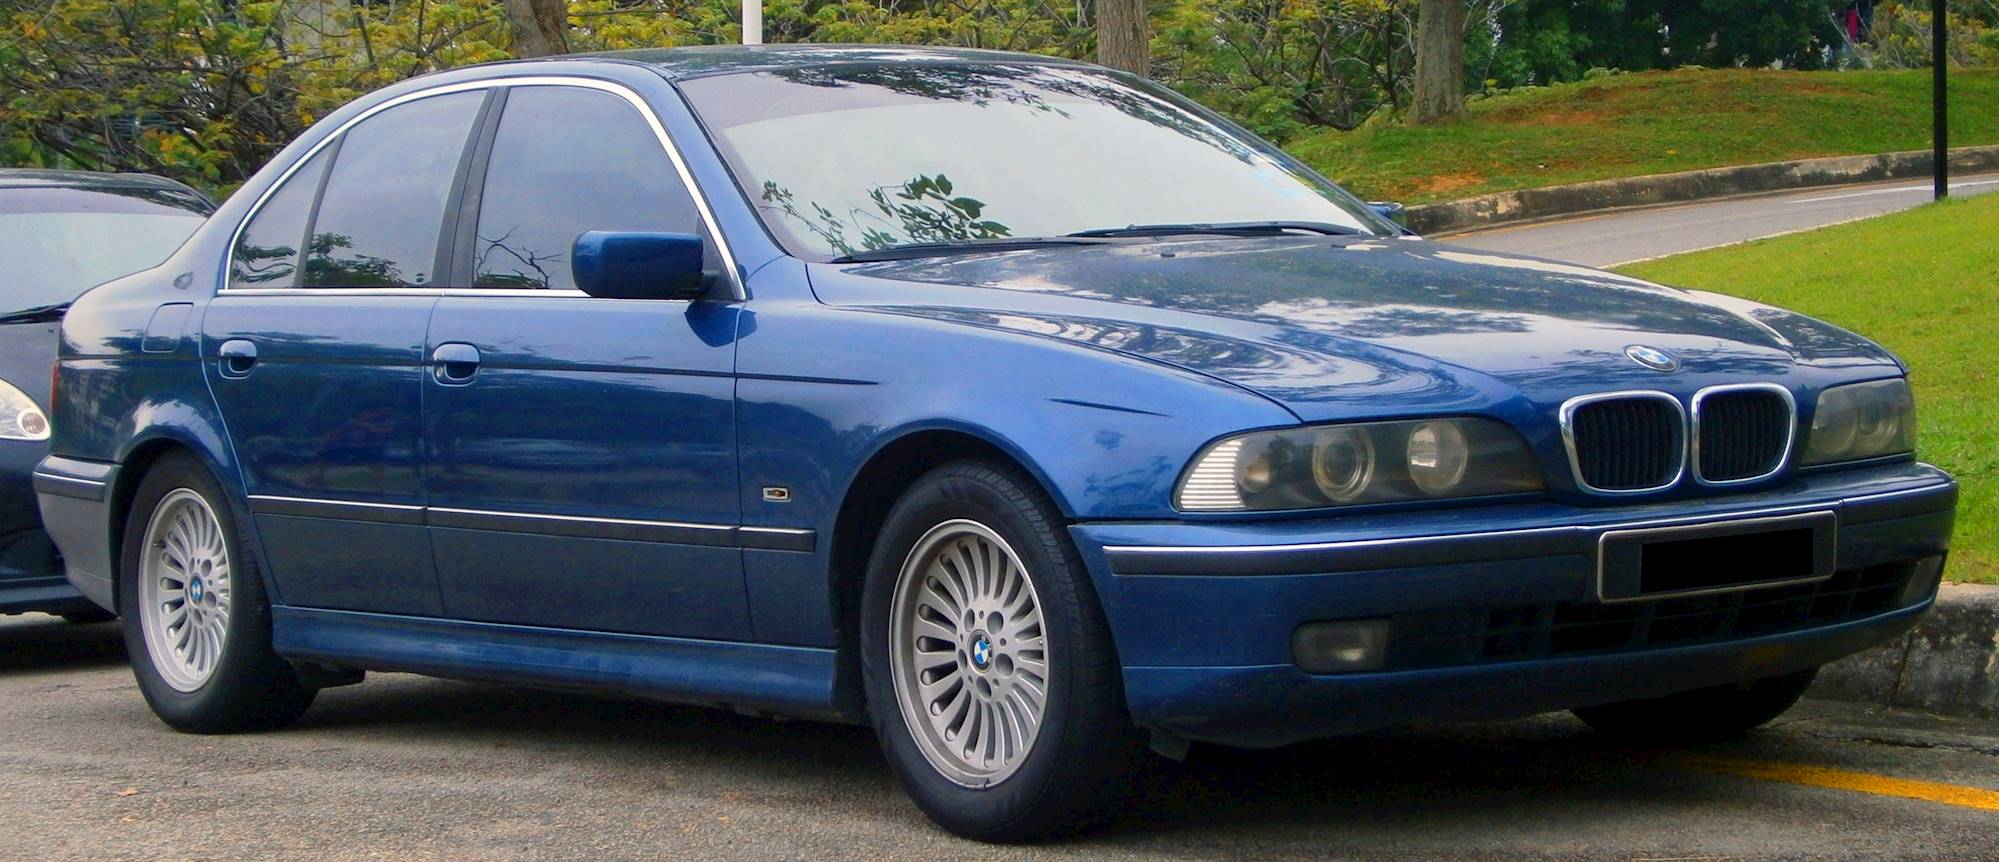 1999 BMW 5 Series 528i - Wagon 2.8L Manual